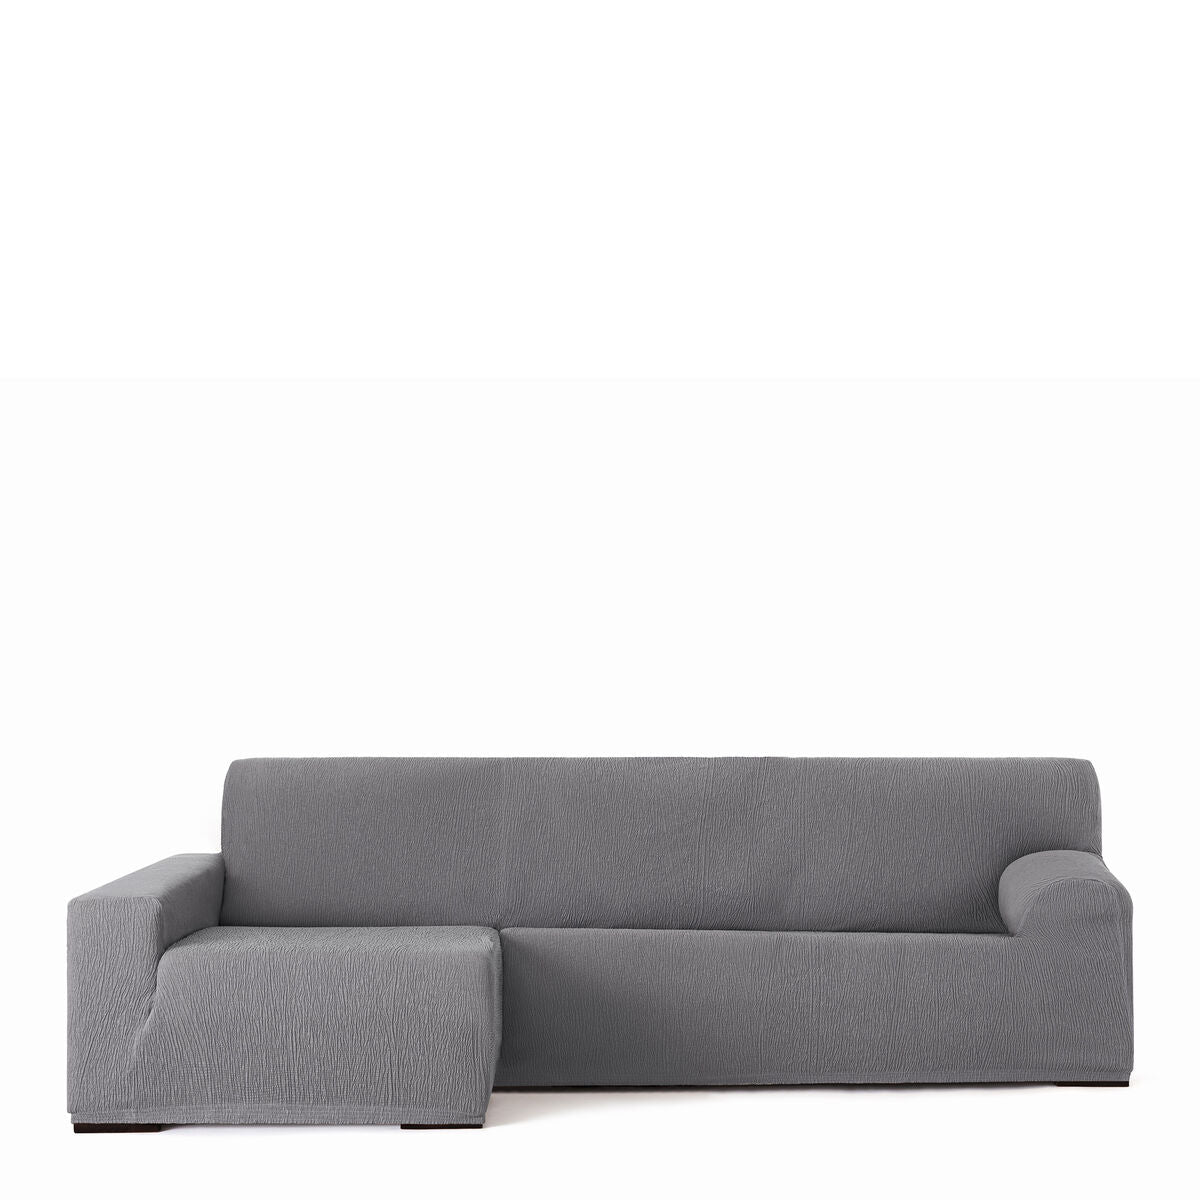 Copertura per sedia a lunghezza sinistra lunga Eysa Troya Grey 170 x 110 x 310 cm